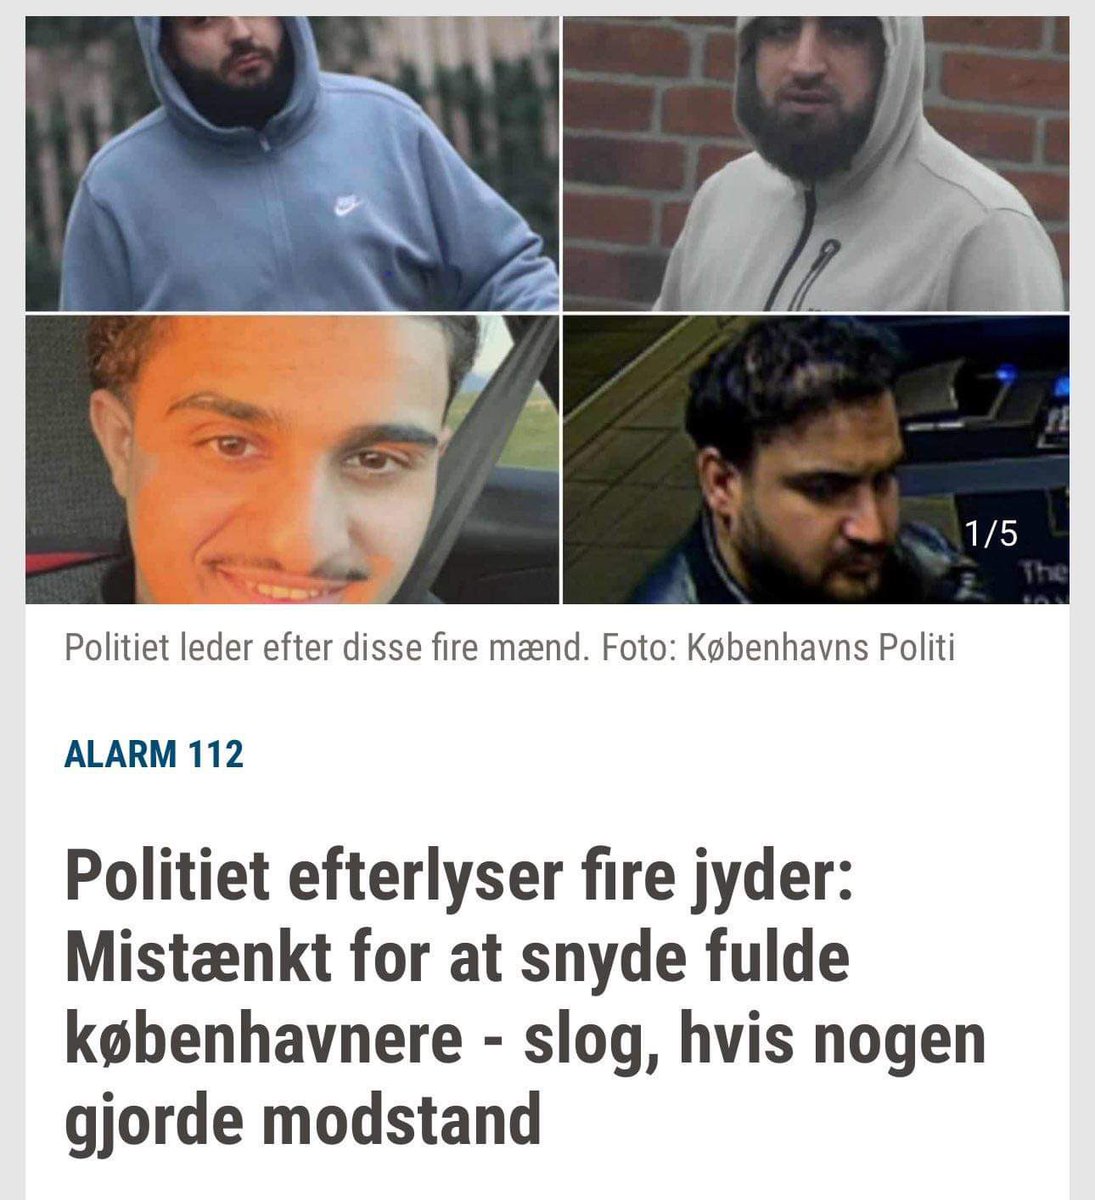 Politiet efterlyser “fire jyder” … 

🙃🙃🙃🙃🙃🙃🙃🙃🙃🙃

#dkpol #dkmedier